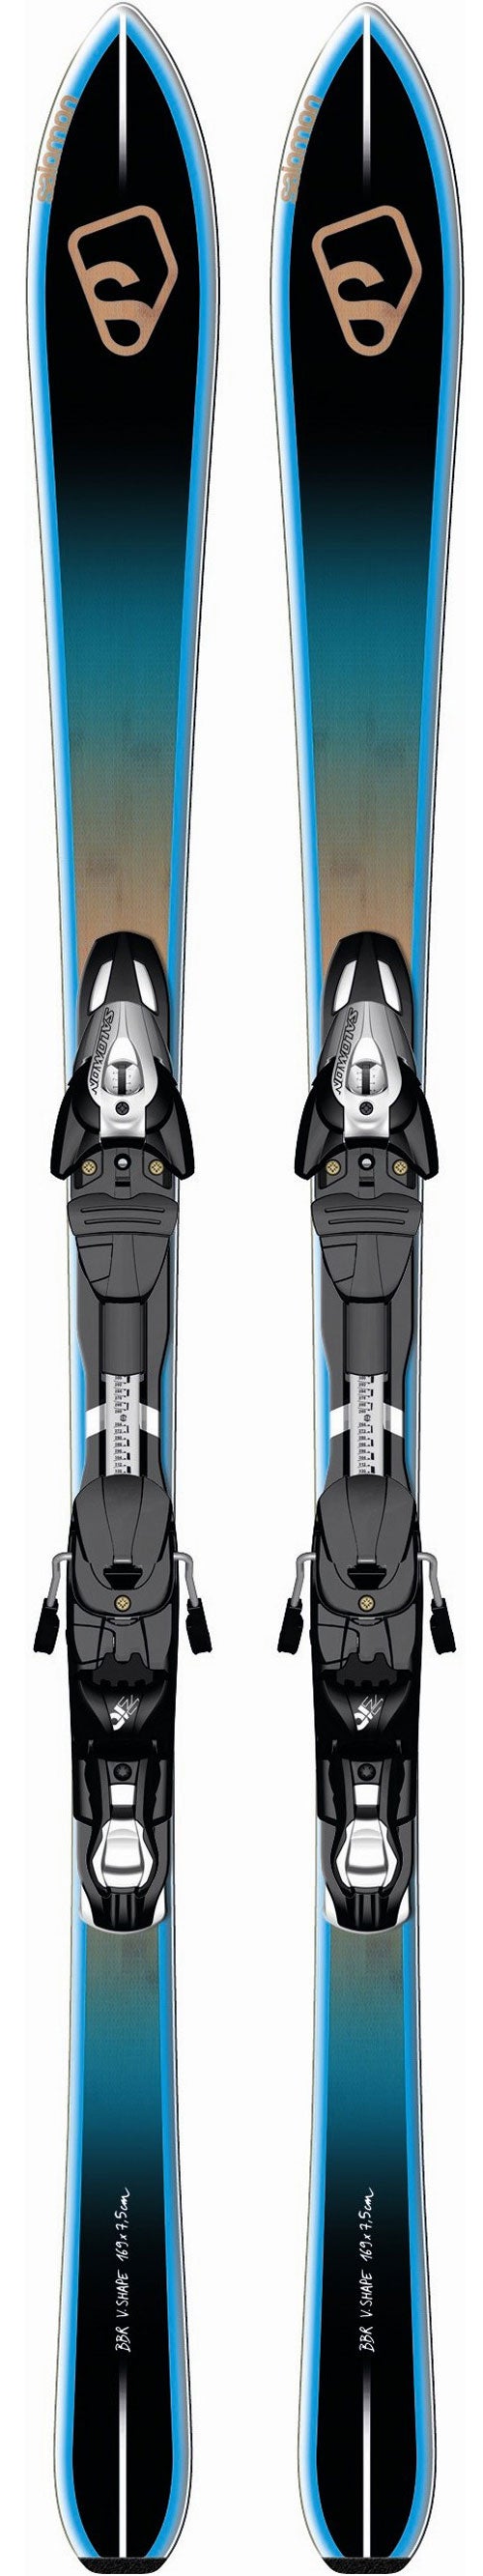 Salomon BBR 7.5+Z10 (2013) - Ski